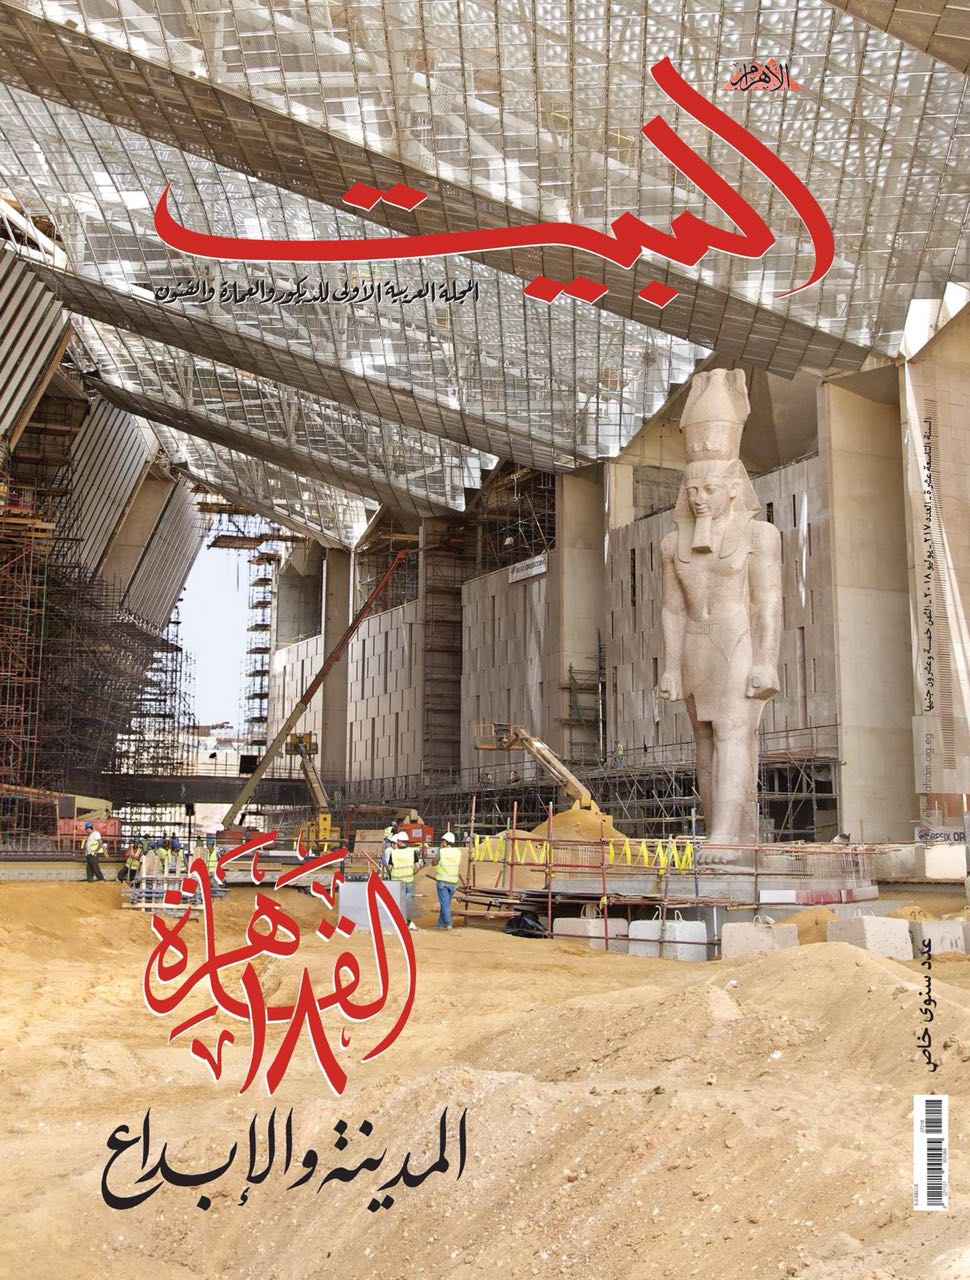 مشهد من بهو المتحف المصري الكبير تصدر غلاف مجلة البيت عدد يوليو احتفالا بعيدها الثامن عشر